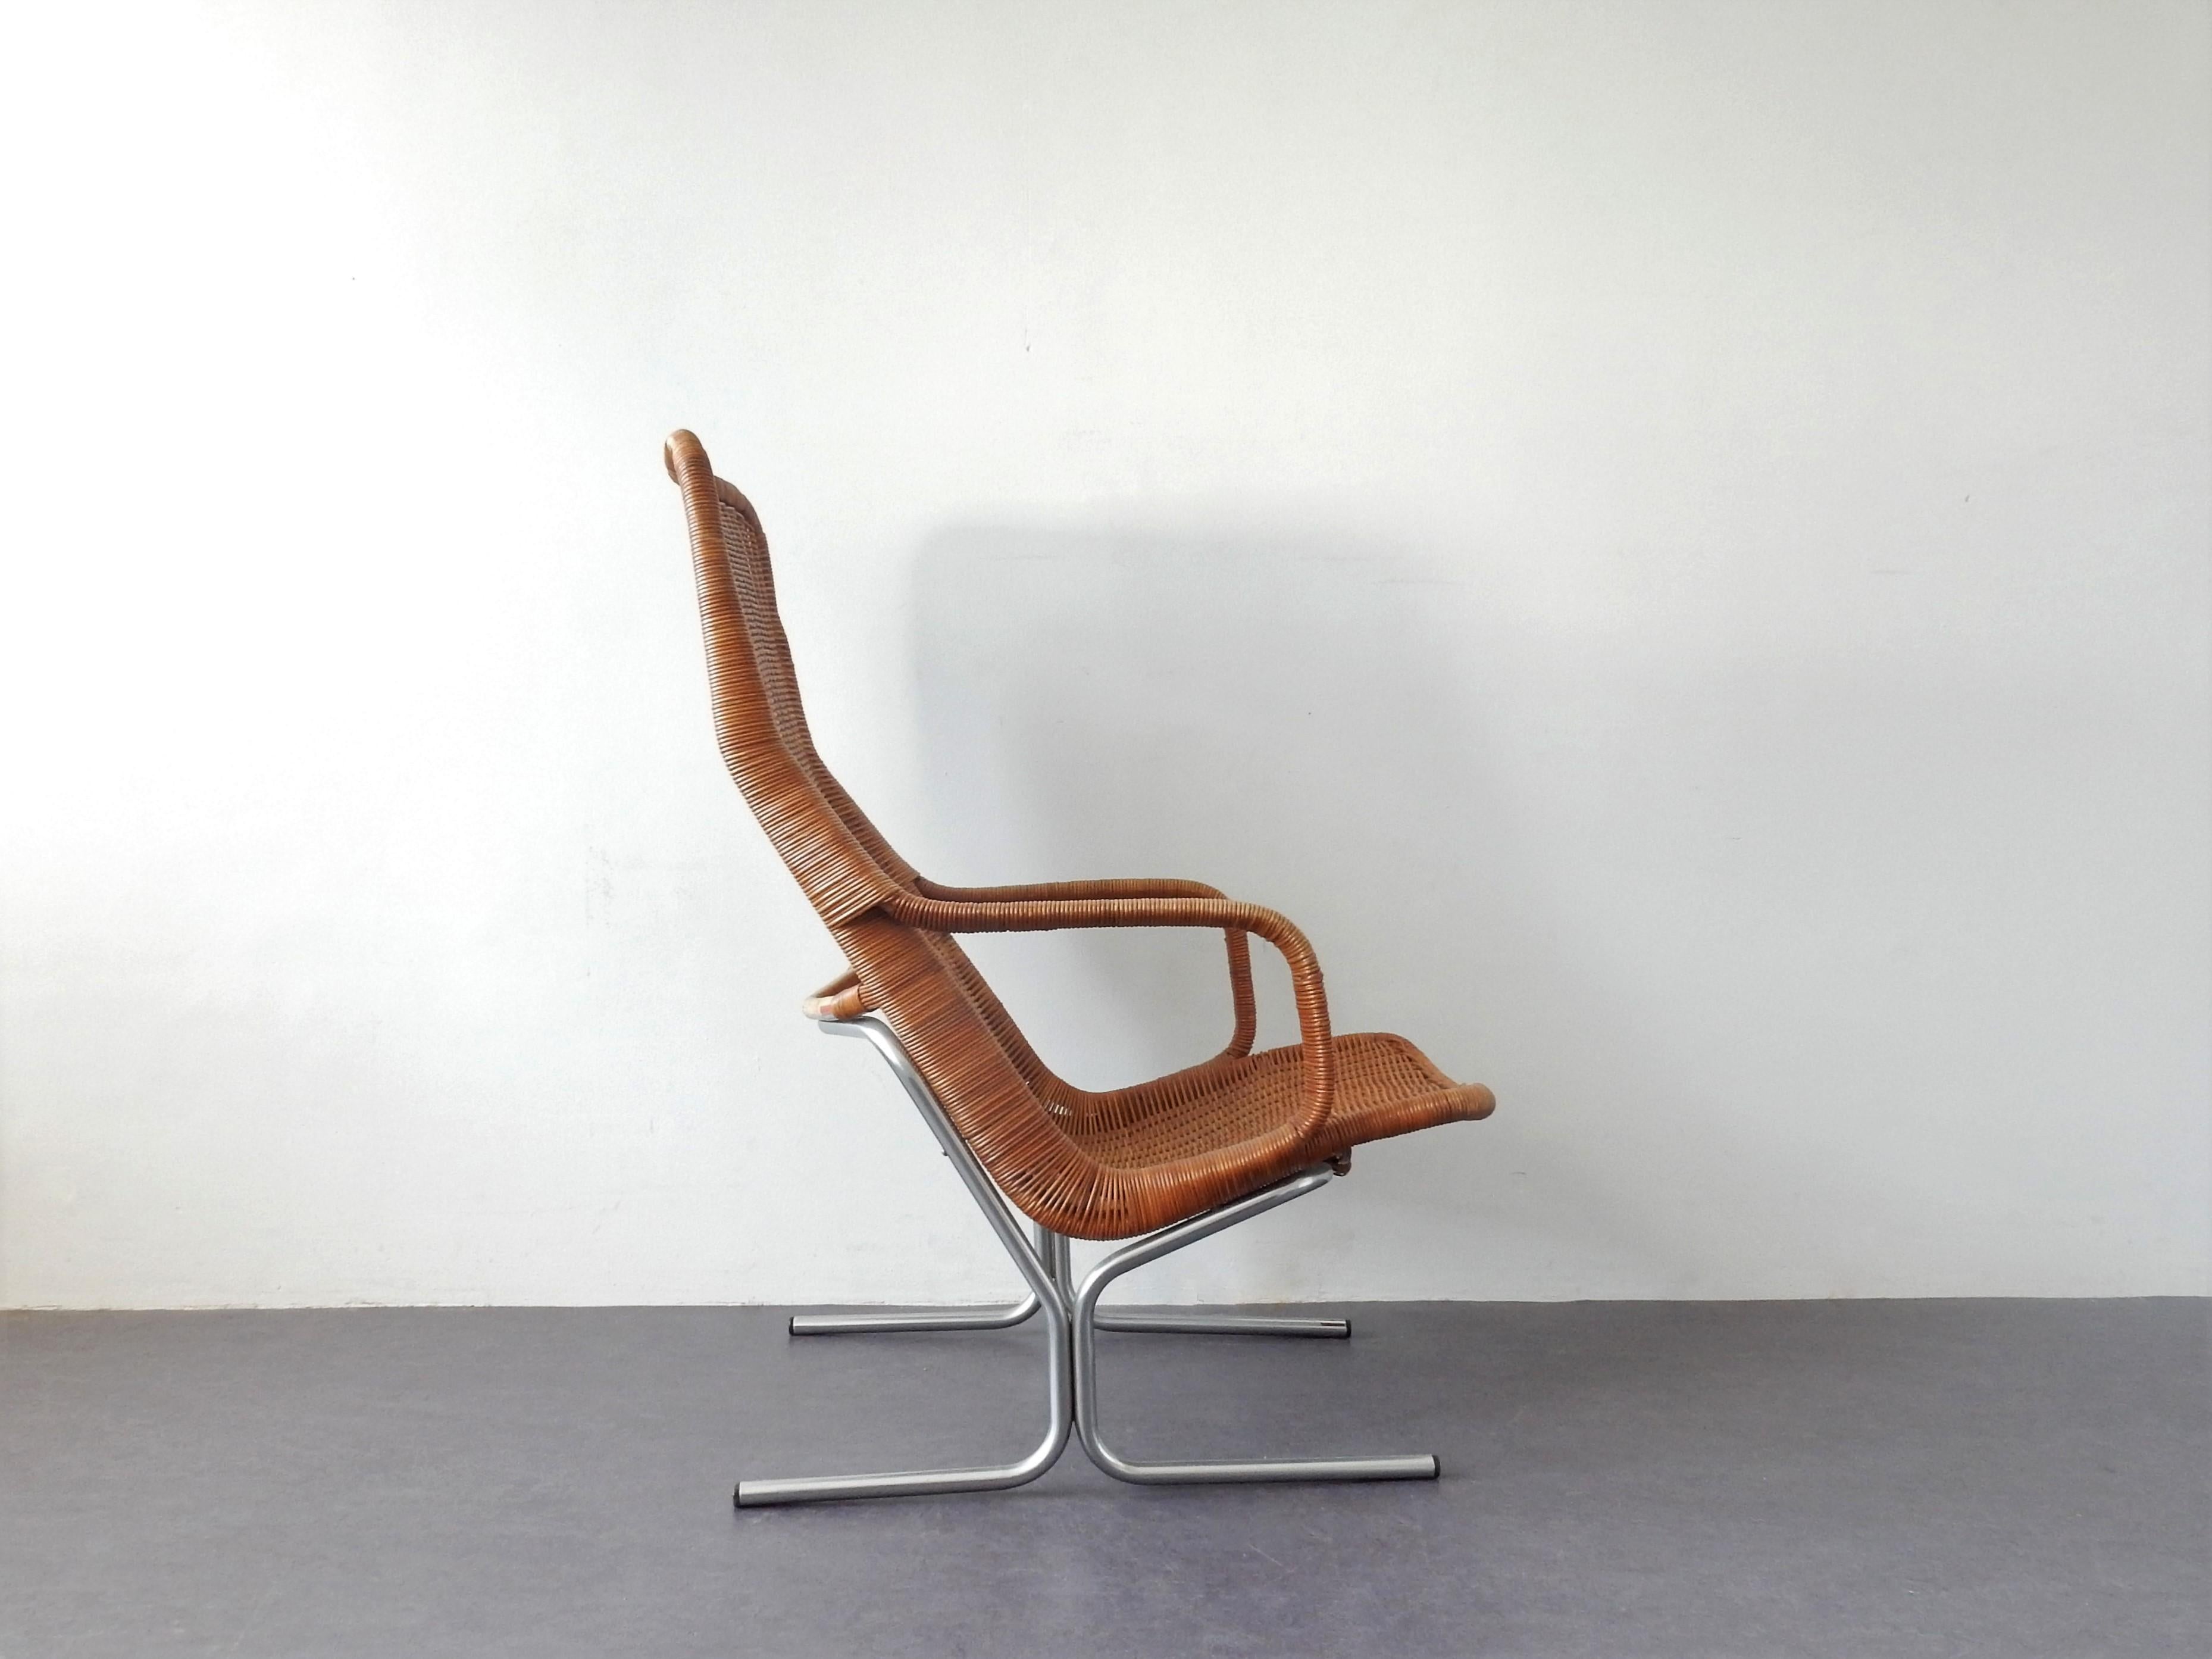 Dieser Loungesessel, Modell 514C, wurde von Dirk van Sliedregt für die Gebr. Sliedregt GmbH entworfen. Jonkers (Gebrüder Jonkers) Noordwolde im Jahr 1961. Die Gebrüder Jonkers waren berühmt für ihre Rattanstühle und -möbel. Dieser Stuhl hat einen